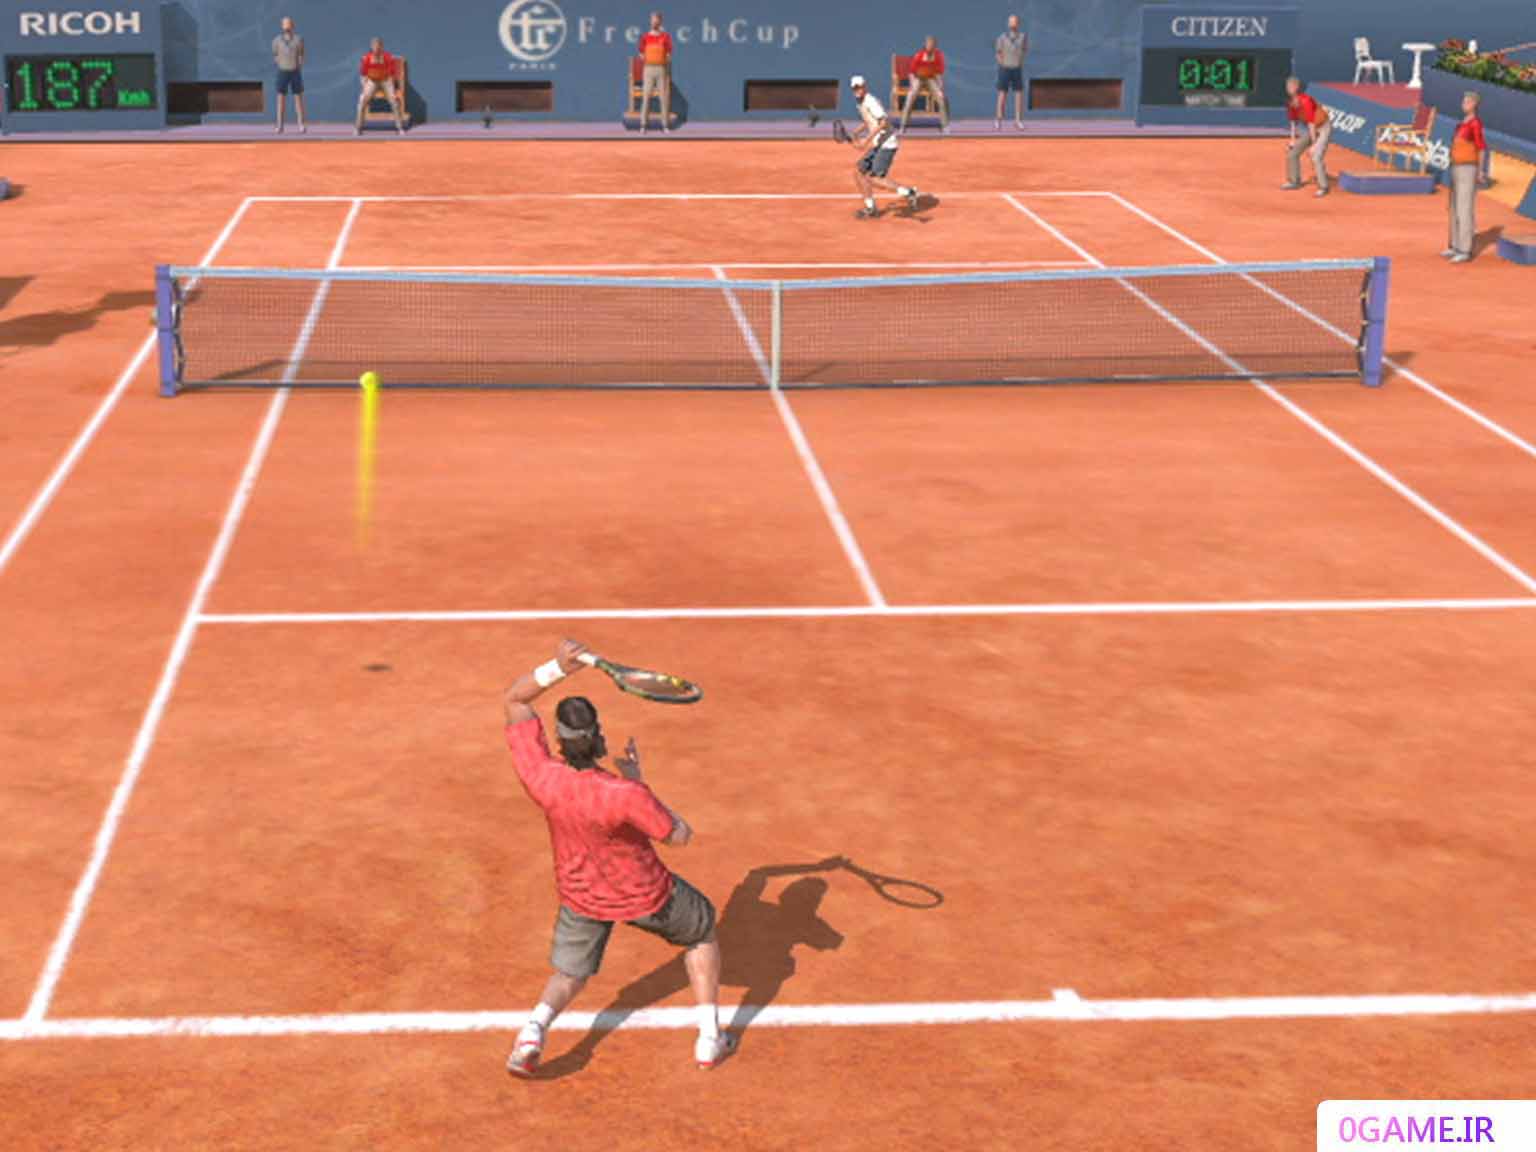 دانلود بازی تنیس مجازی 4 (Virtua Tennis) نسخه کامل برای کامپیوتر